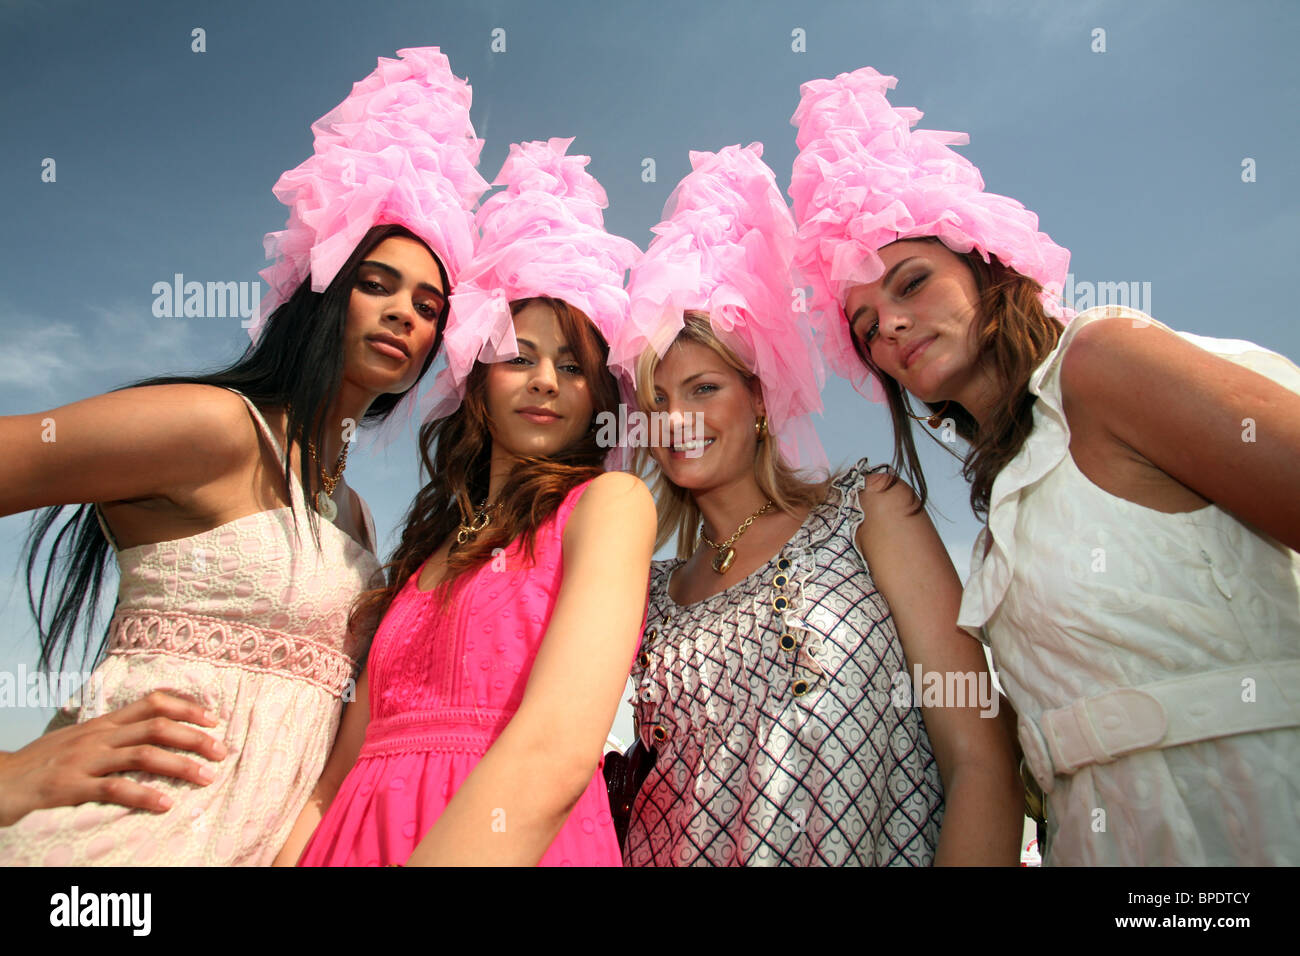 Elegantly dressed women, Dubai, United Arab Emirates Stock Photo